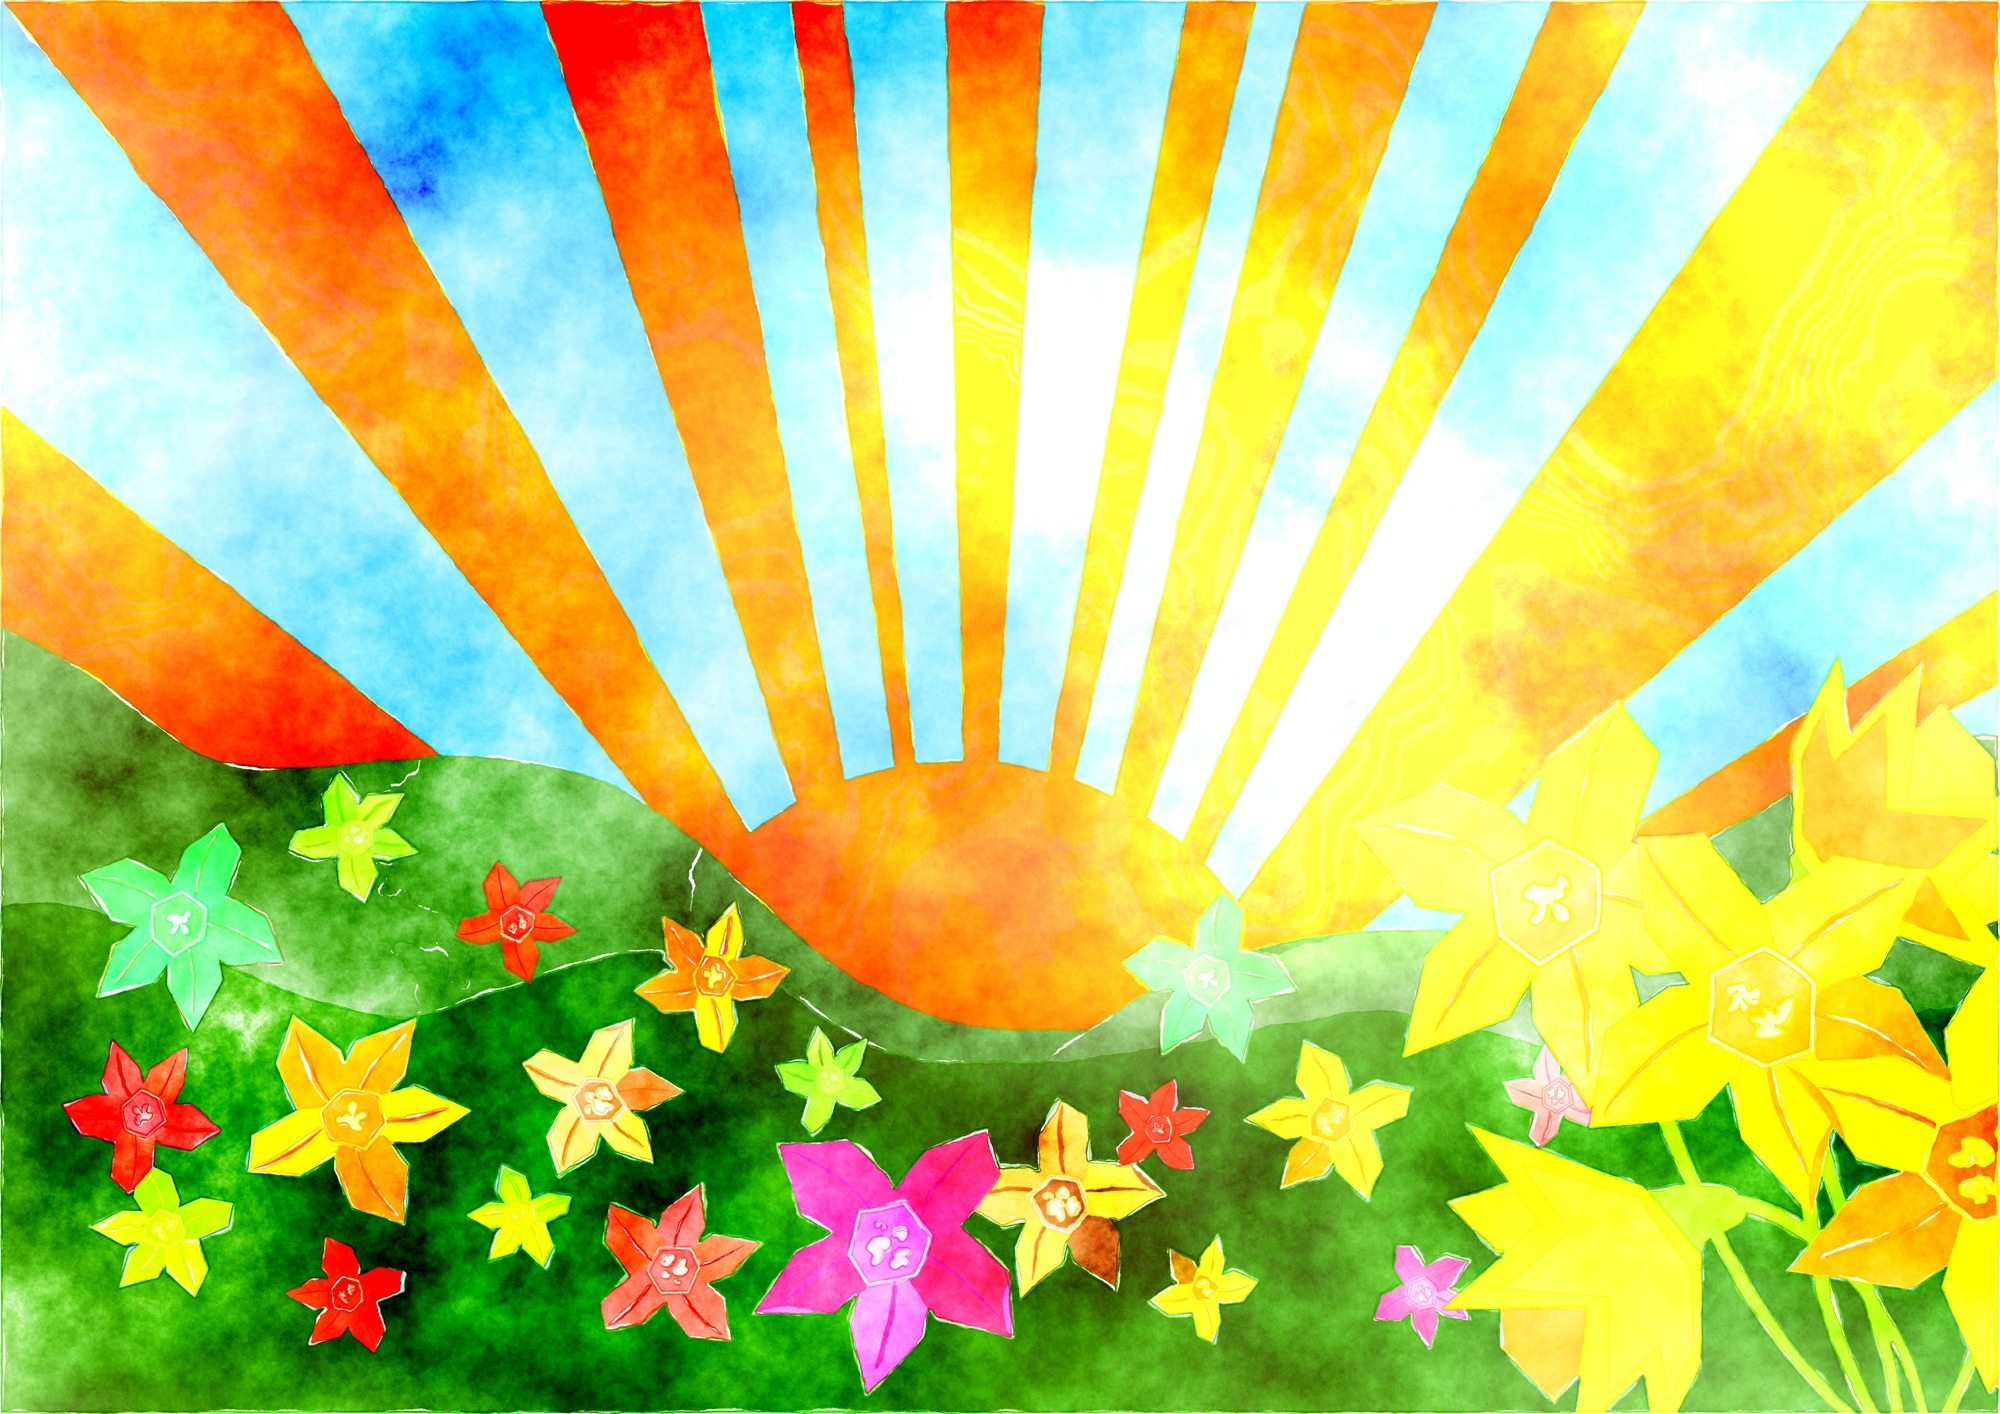 Скачать обои бесплатно Солнце, Цветок, Цвета, Красочный, Весна, Художественные картинка на рабочий стол ПК